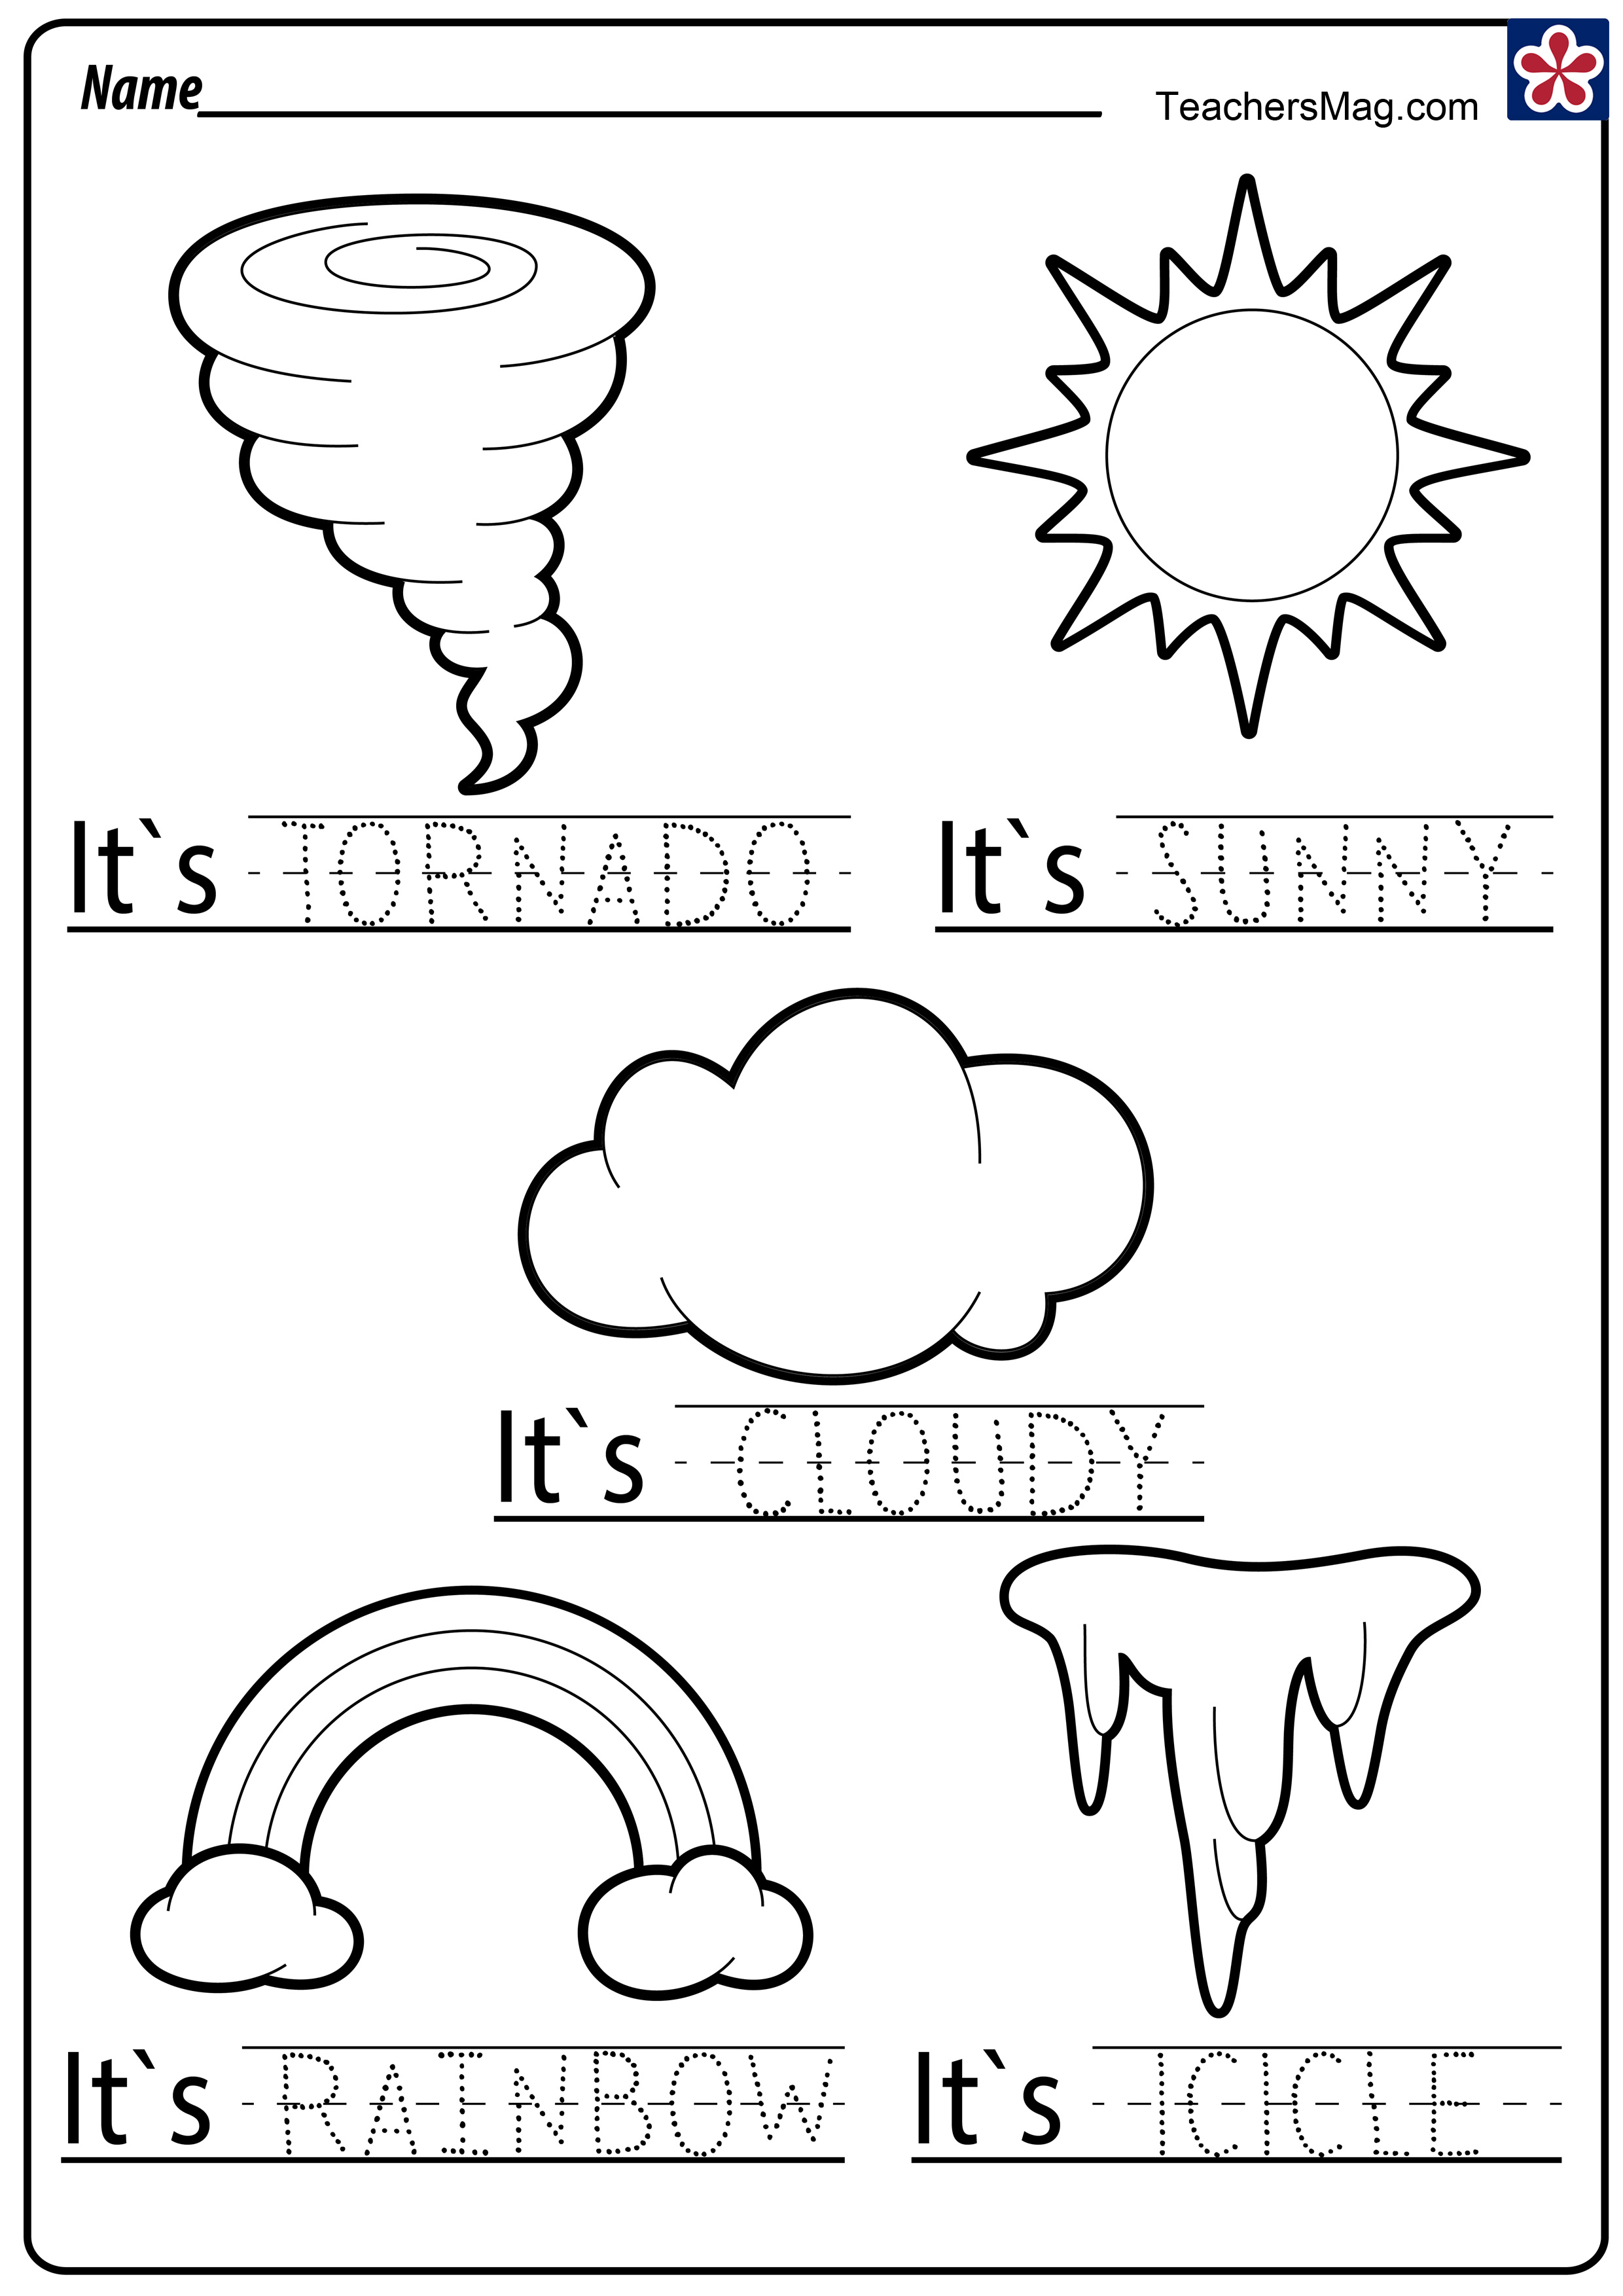 Free Printable Weather Worksheets For Preschoolers